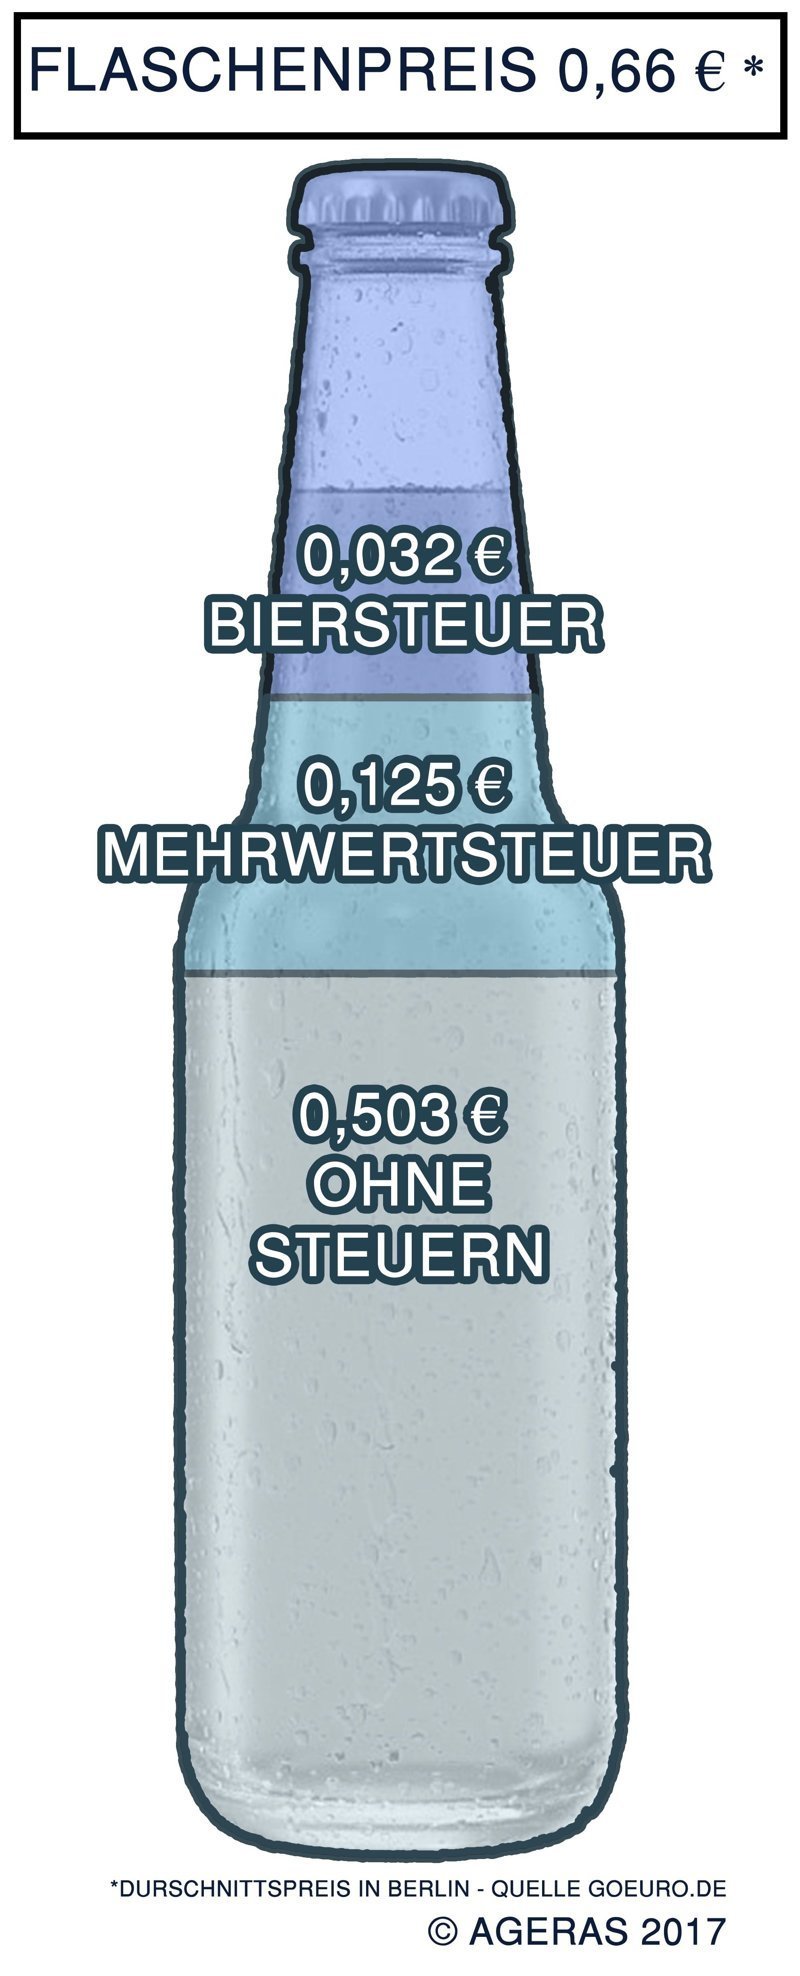 Налог на пиво (Biersteuer)